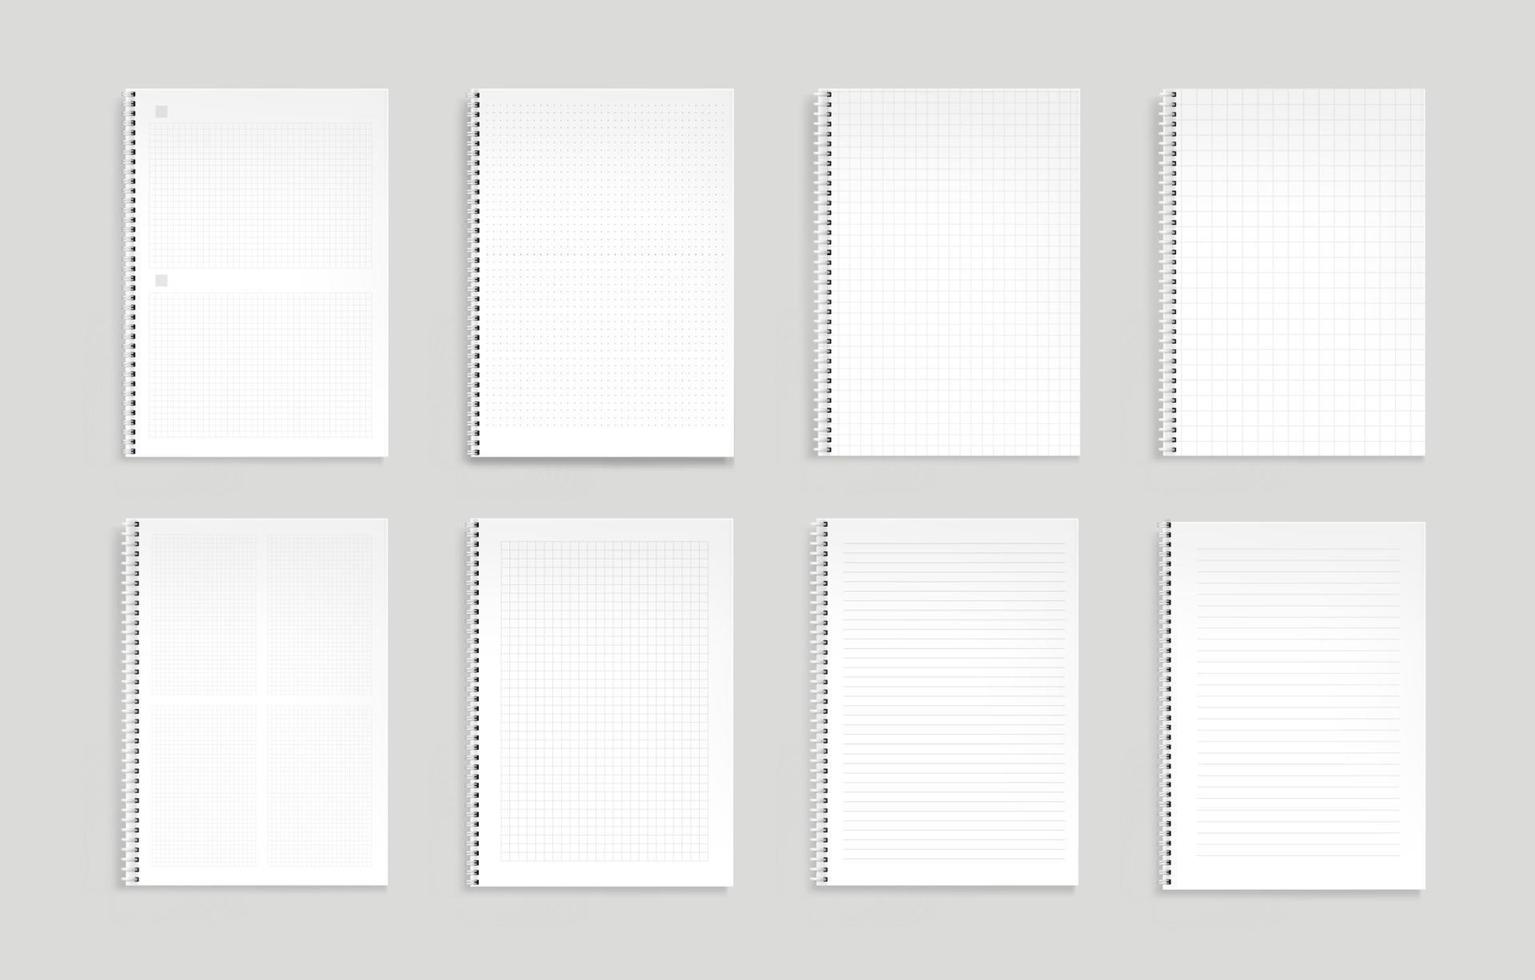 cahiers avec lignes, points et grille carrée vecteur